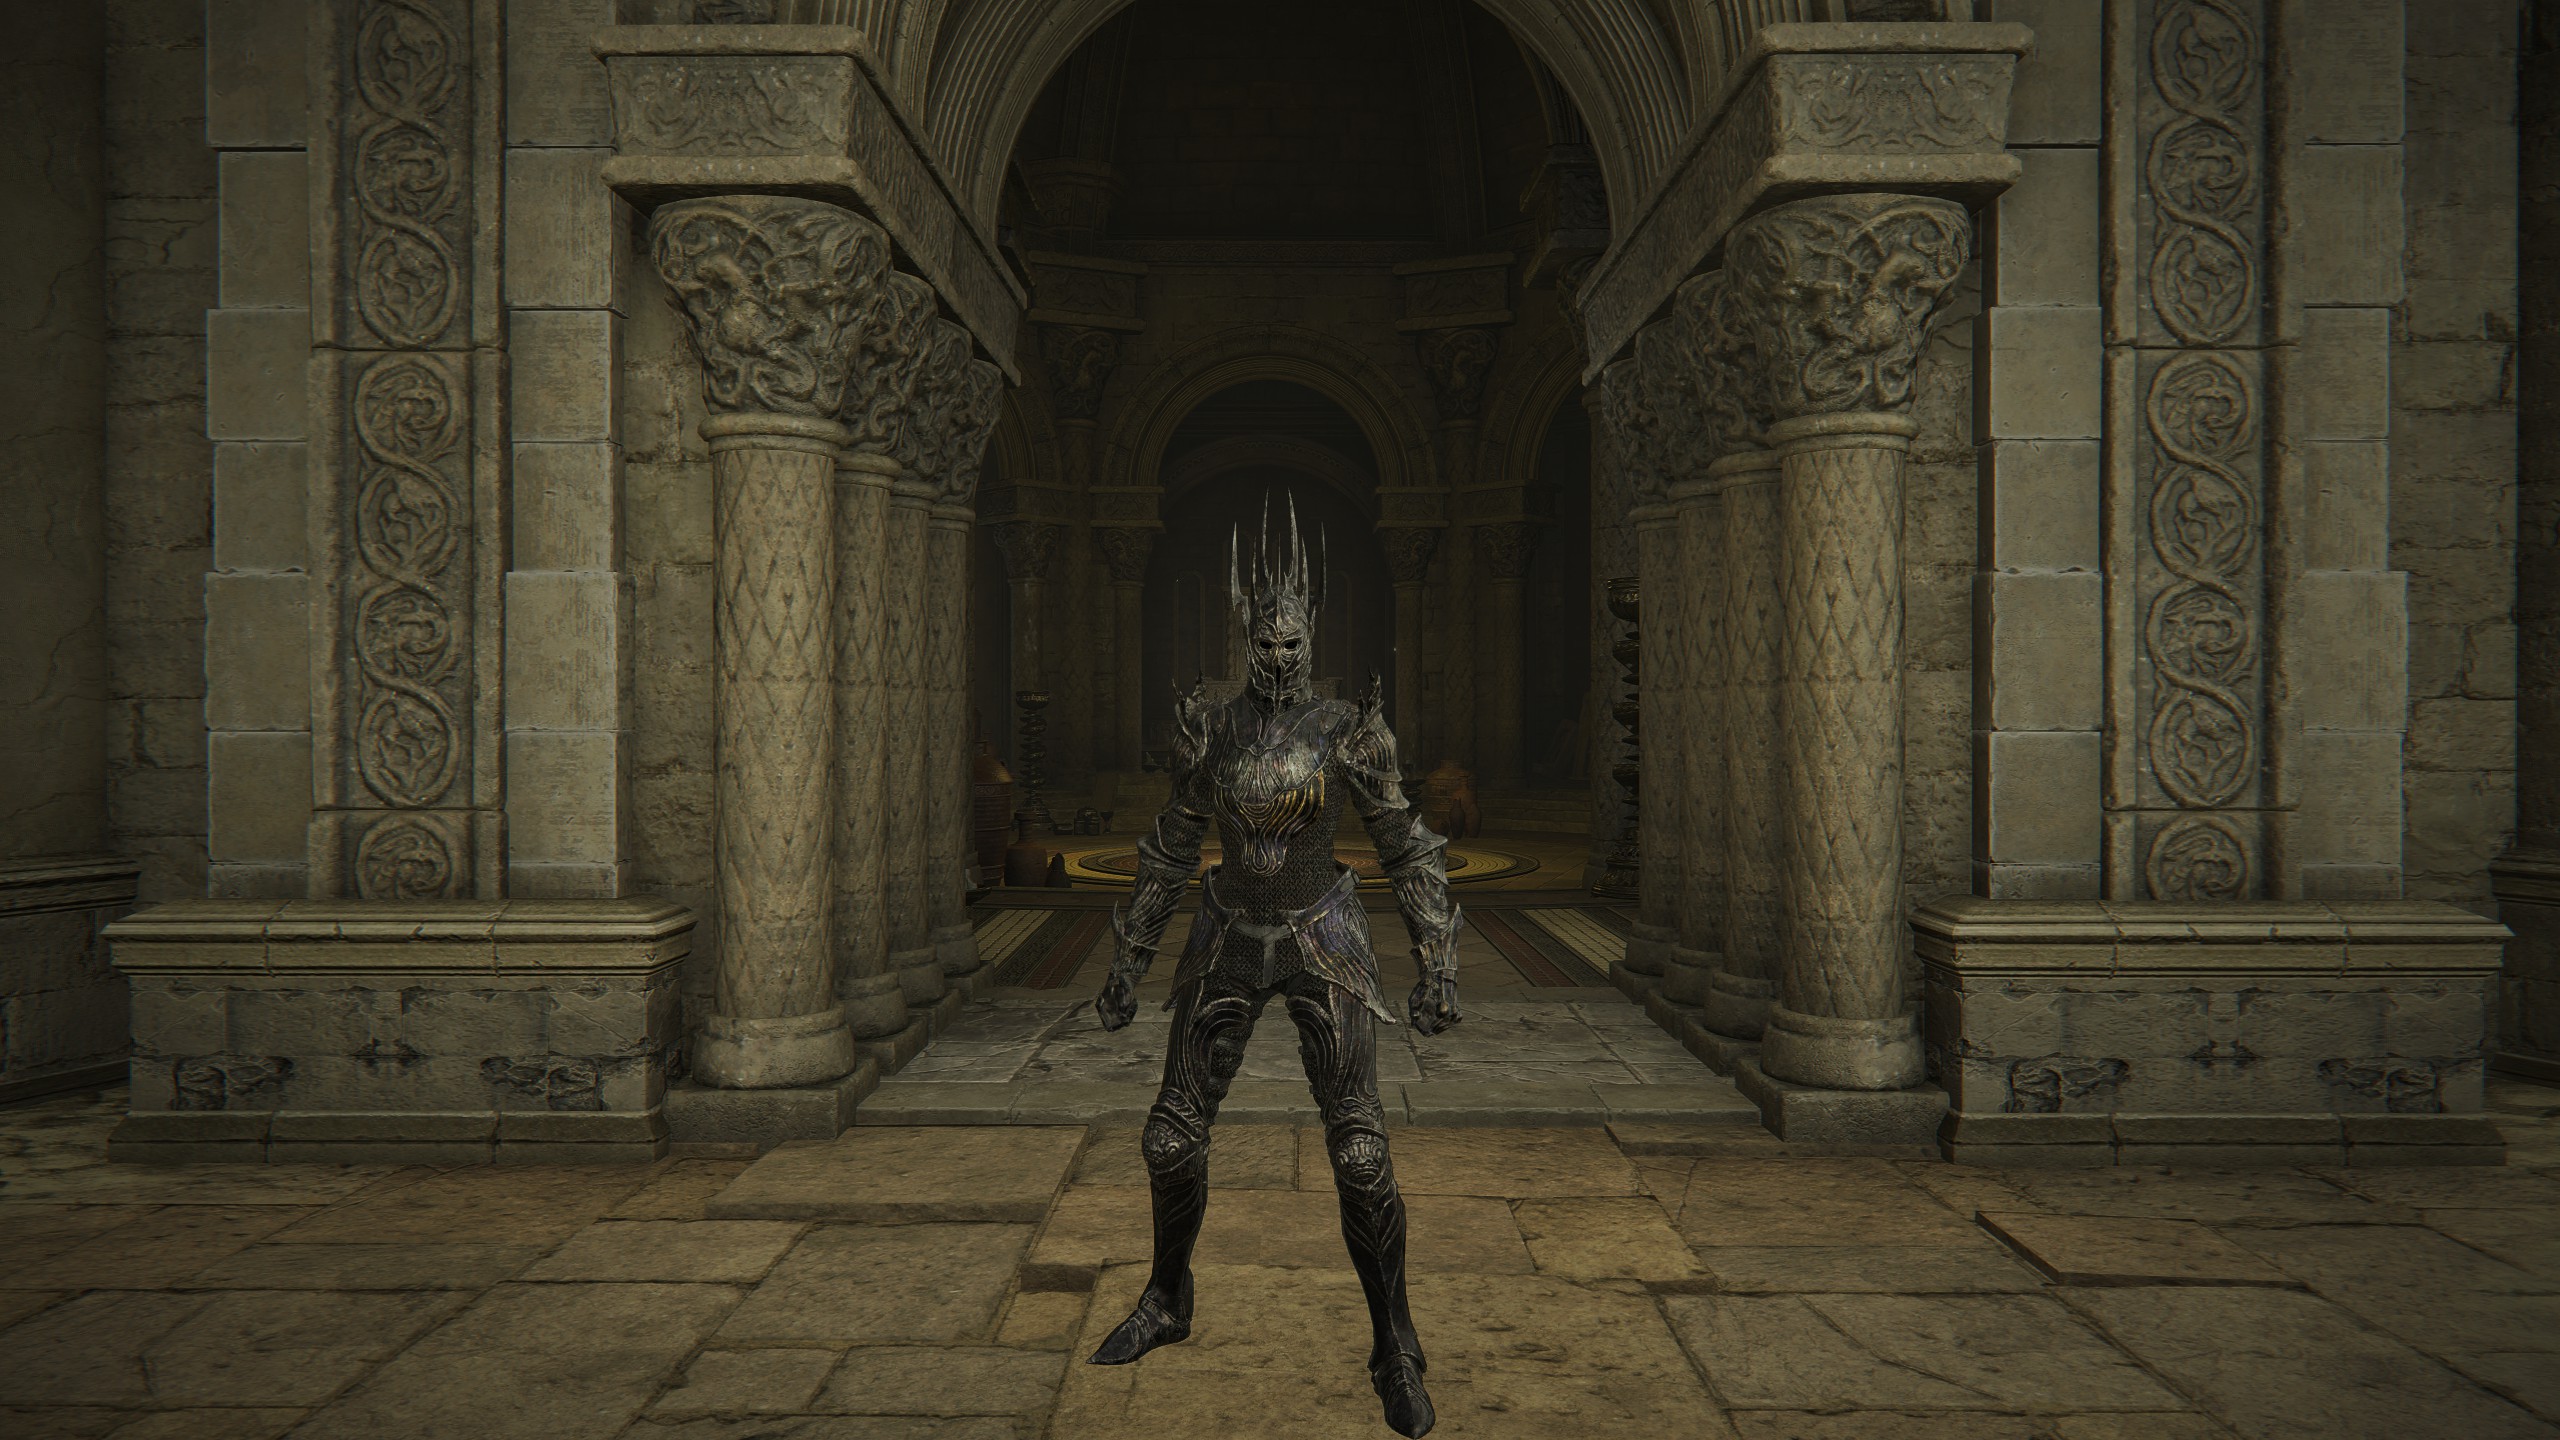 Elden Ring: Shadow of the Erdtree best armor - Swordhand of the Night set